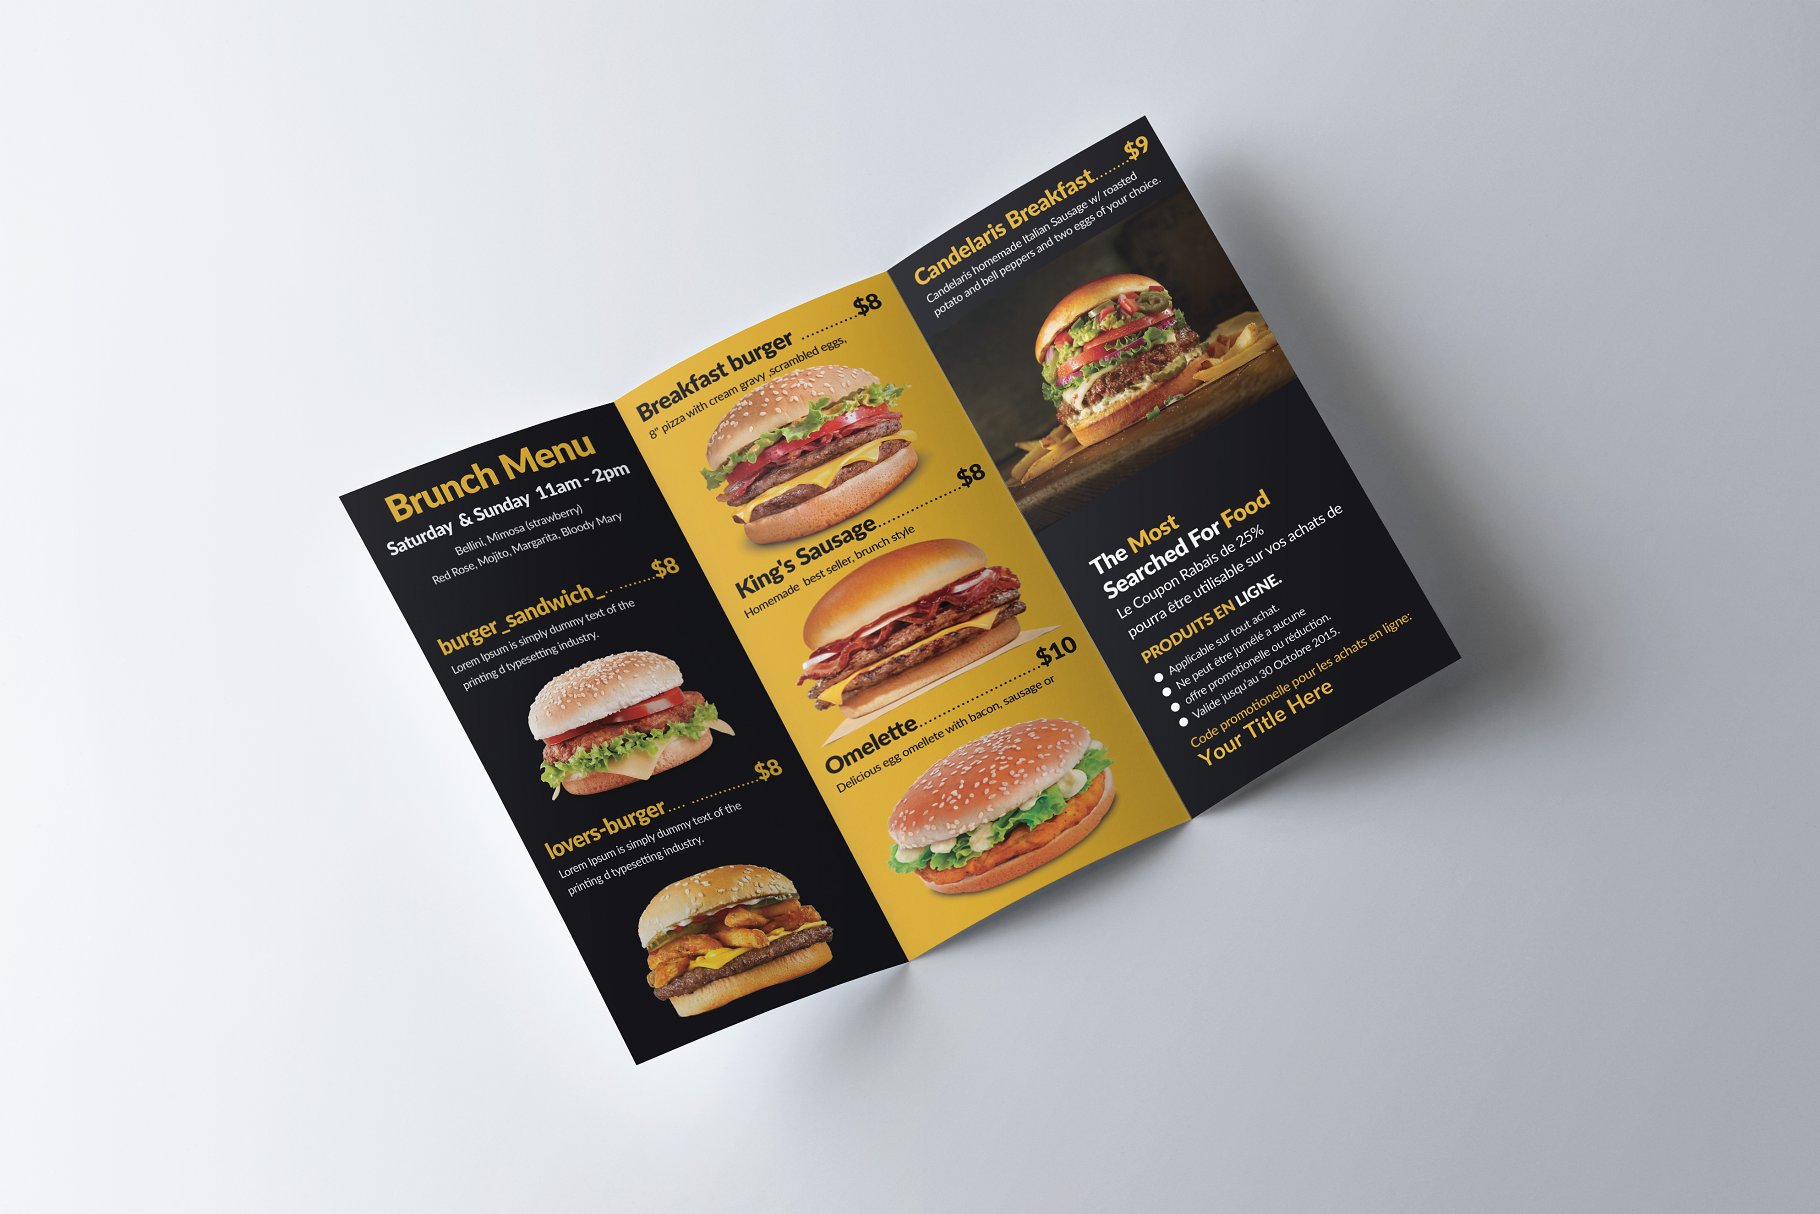 面包店西式快餐折页广告传单模板 Healthy Food Menu Brochure Trifold插图(2)